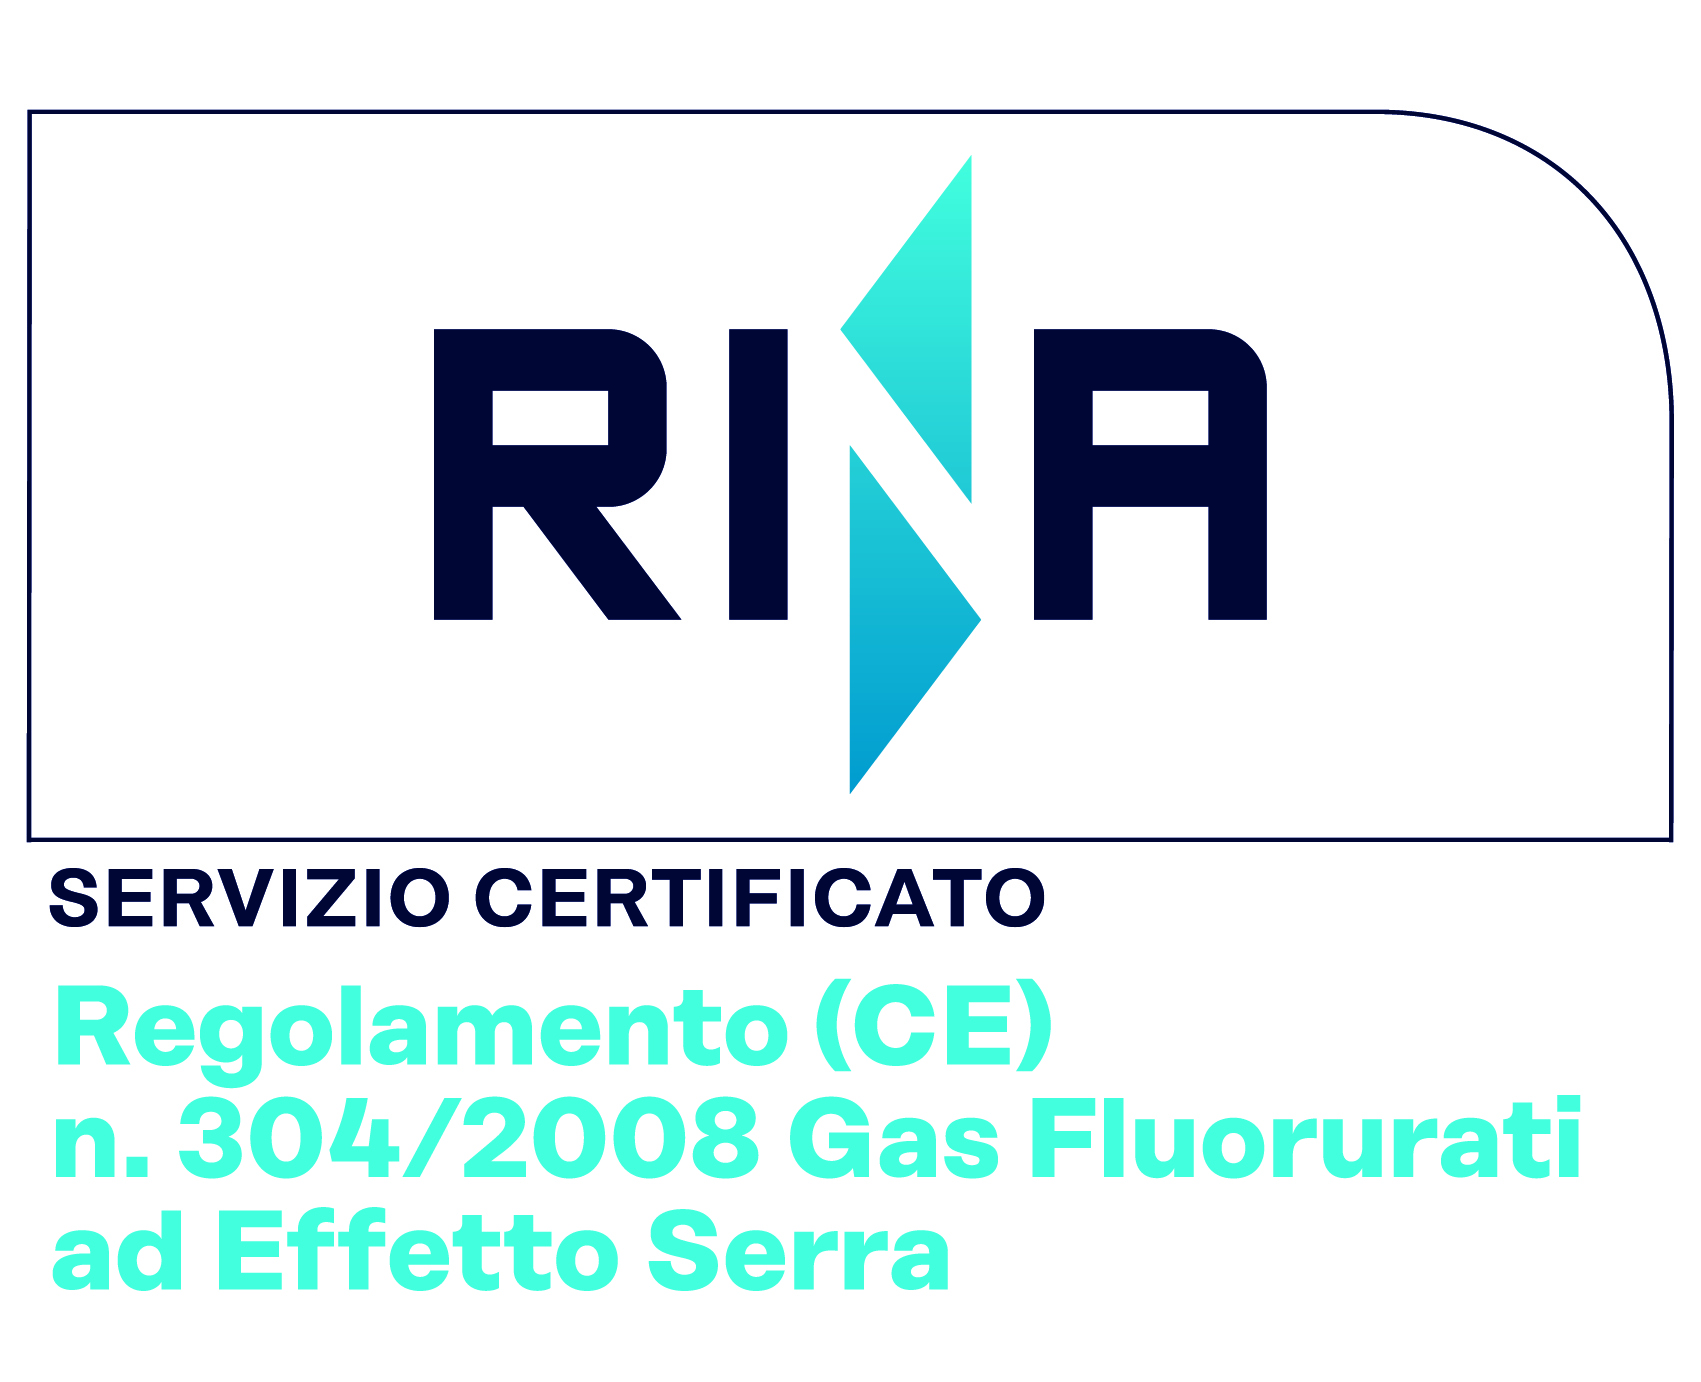 Regolamento-(CE)-n.-304-2008-Gas-Fluorurati-Effetto-Serra_col - Copia - Copia